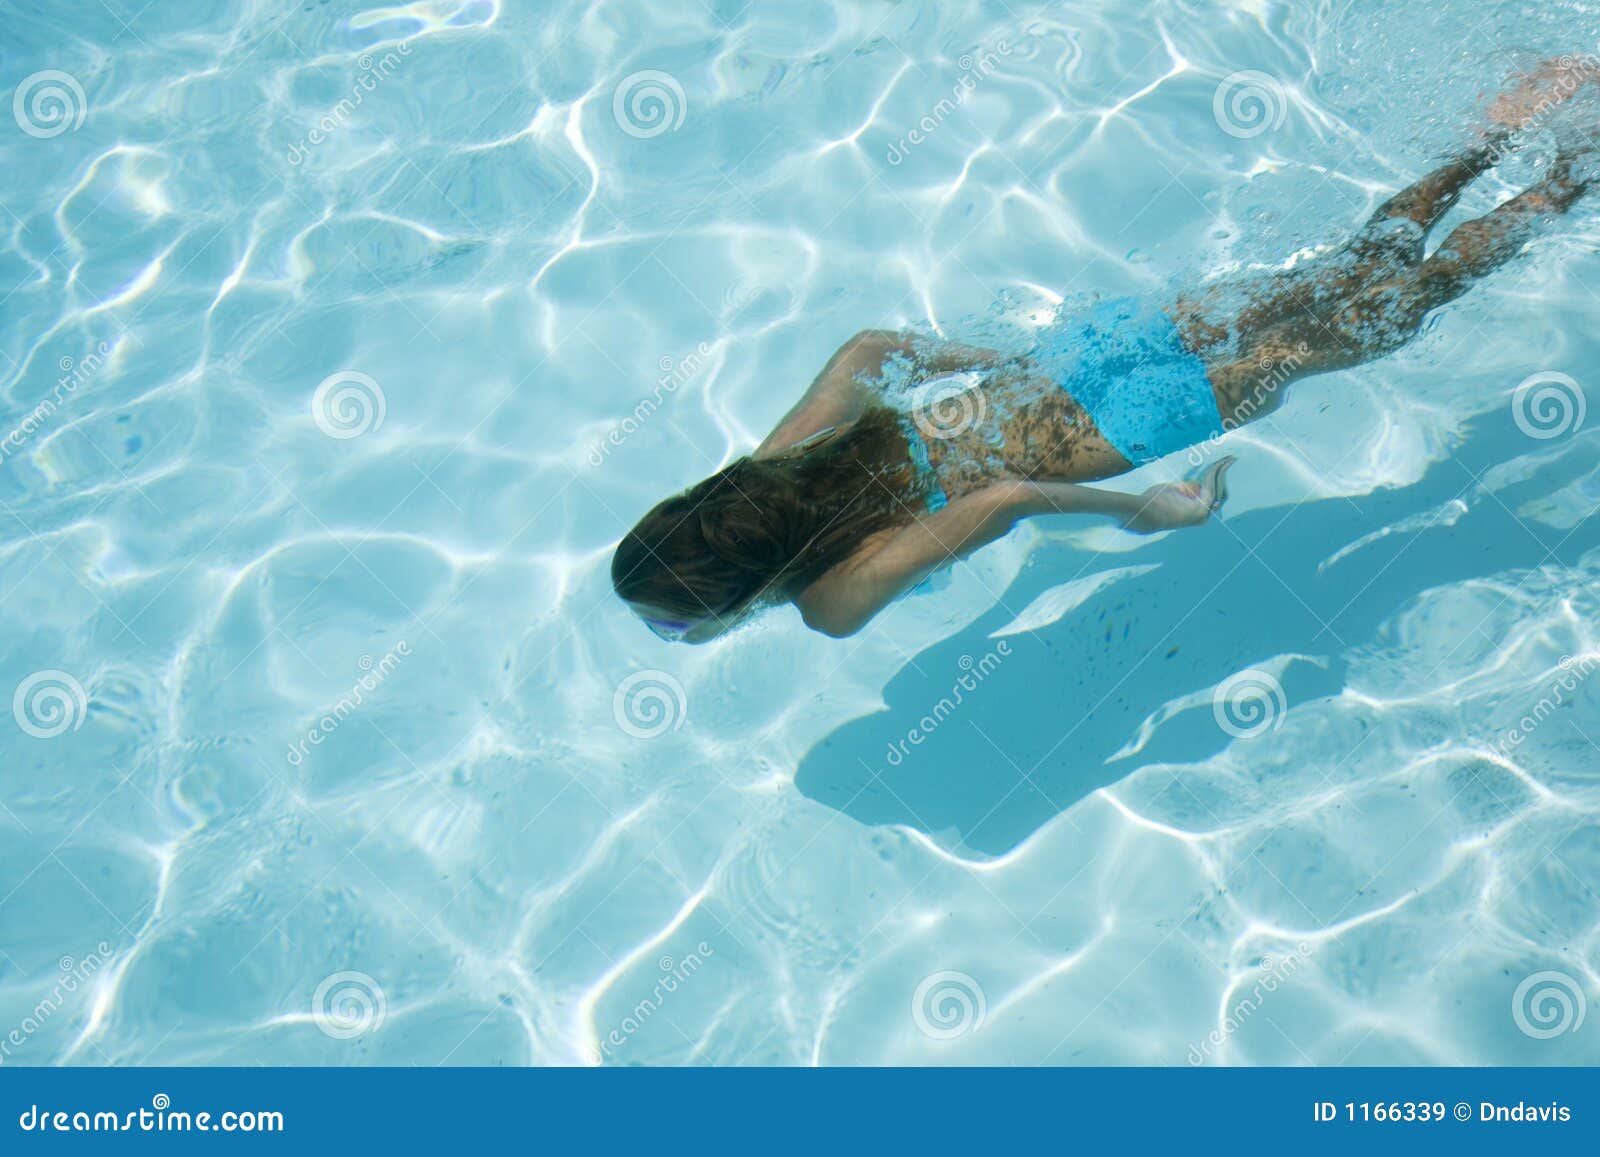 Nuoto immagine stock. Immagine di idoneità, bambino, immersione - 1166339